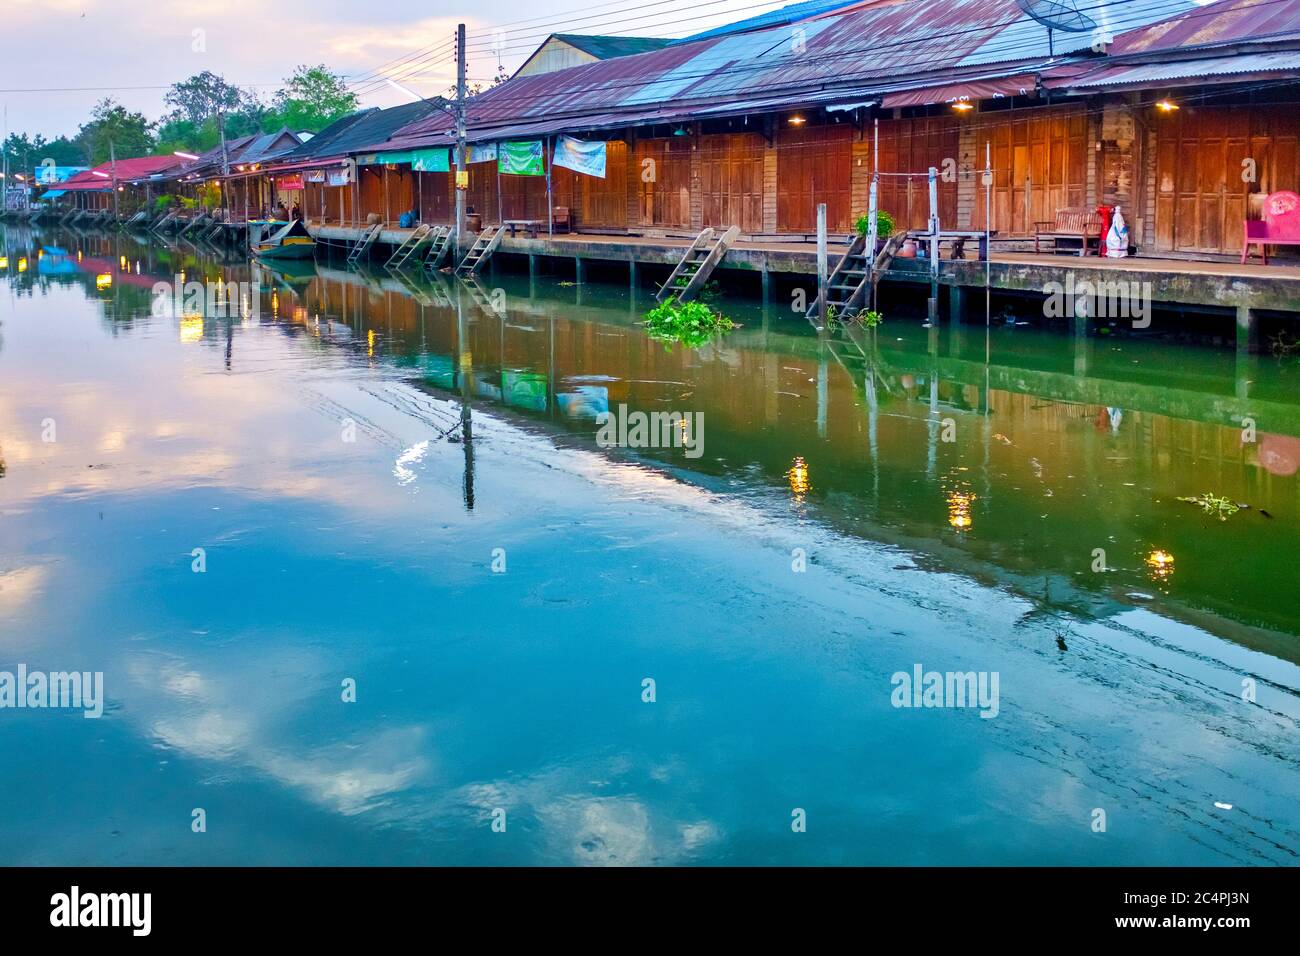 Amphawa floating market during weekdays, Amphawa, Thailand Stock Photo